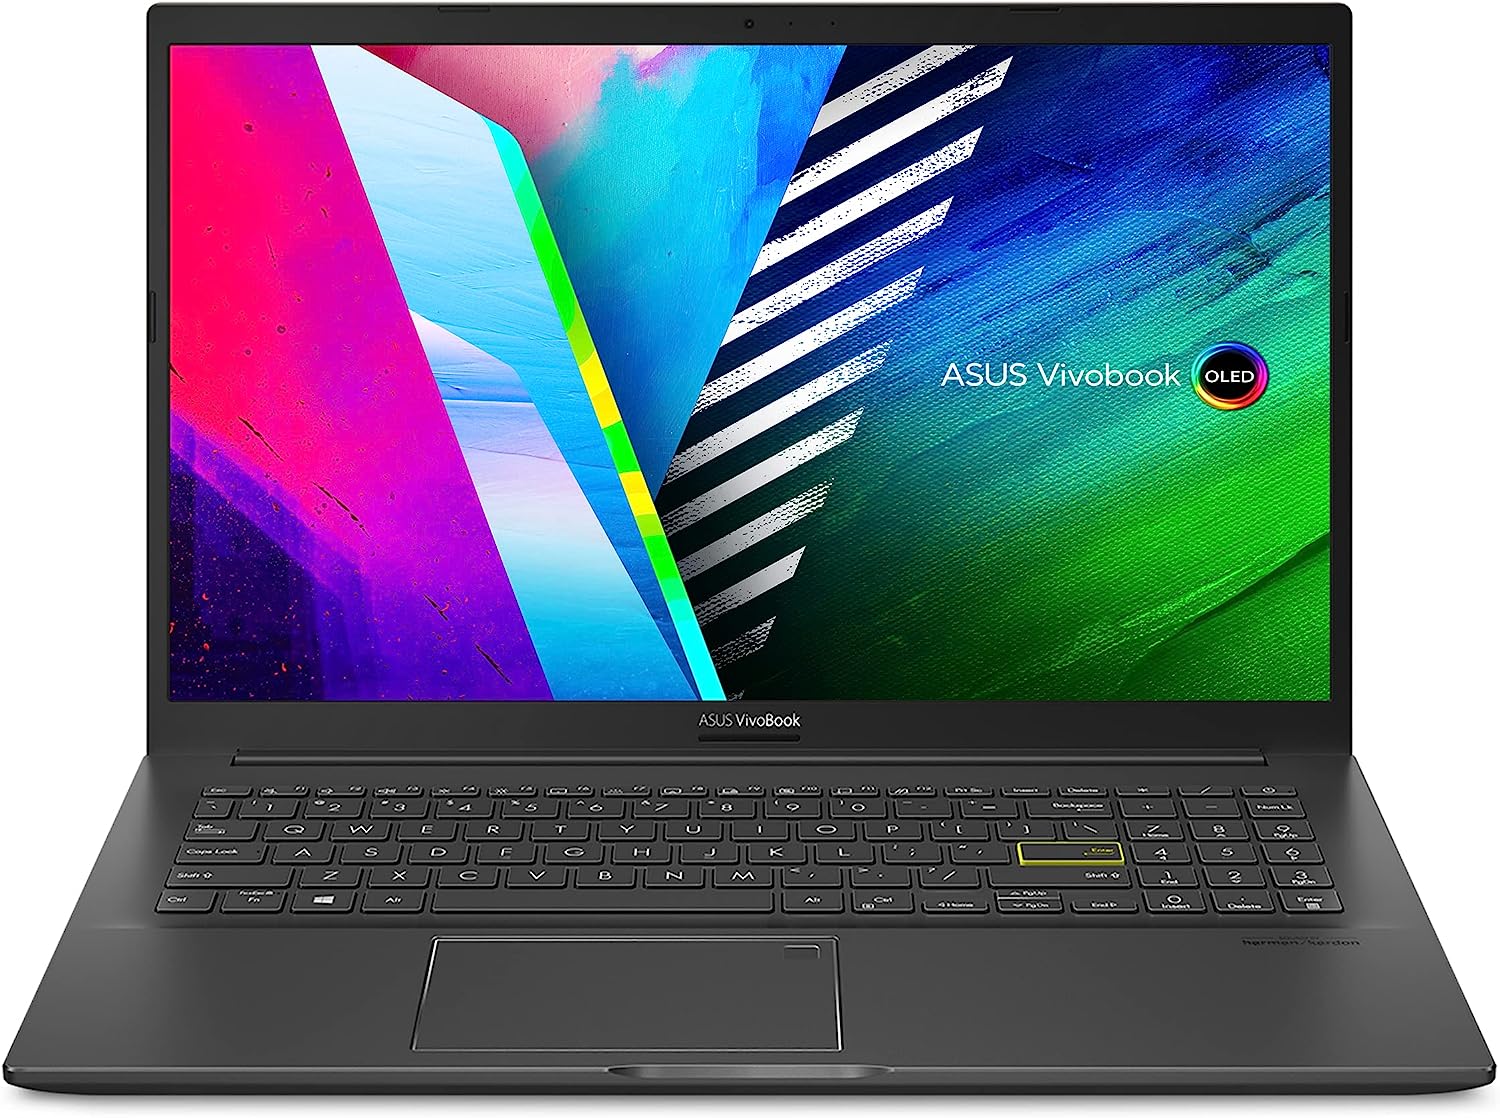 Spesifikasi dan Harga Lengkap Laptop Asus Viviobook K513ea, Paling Ramping dan Simpel!